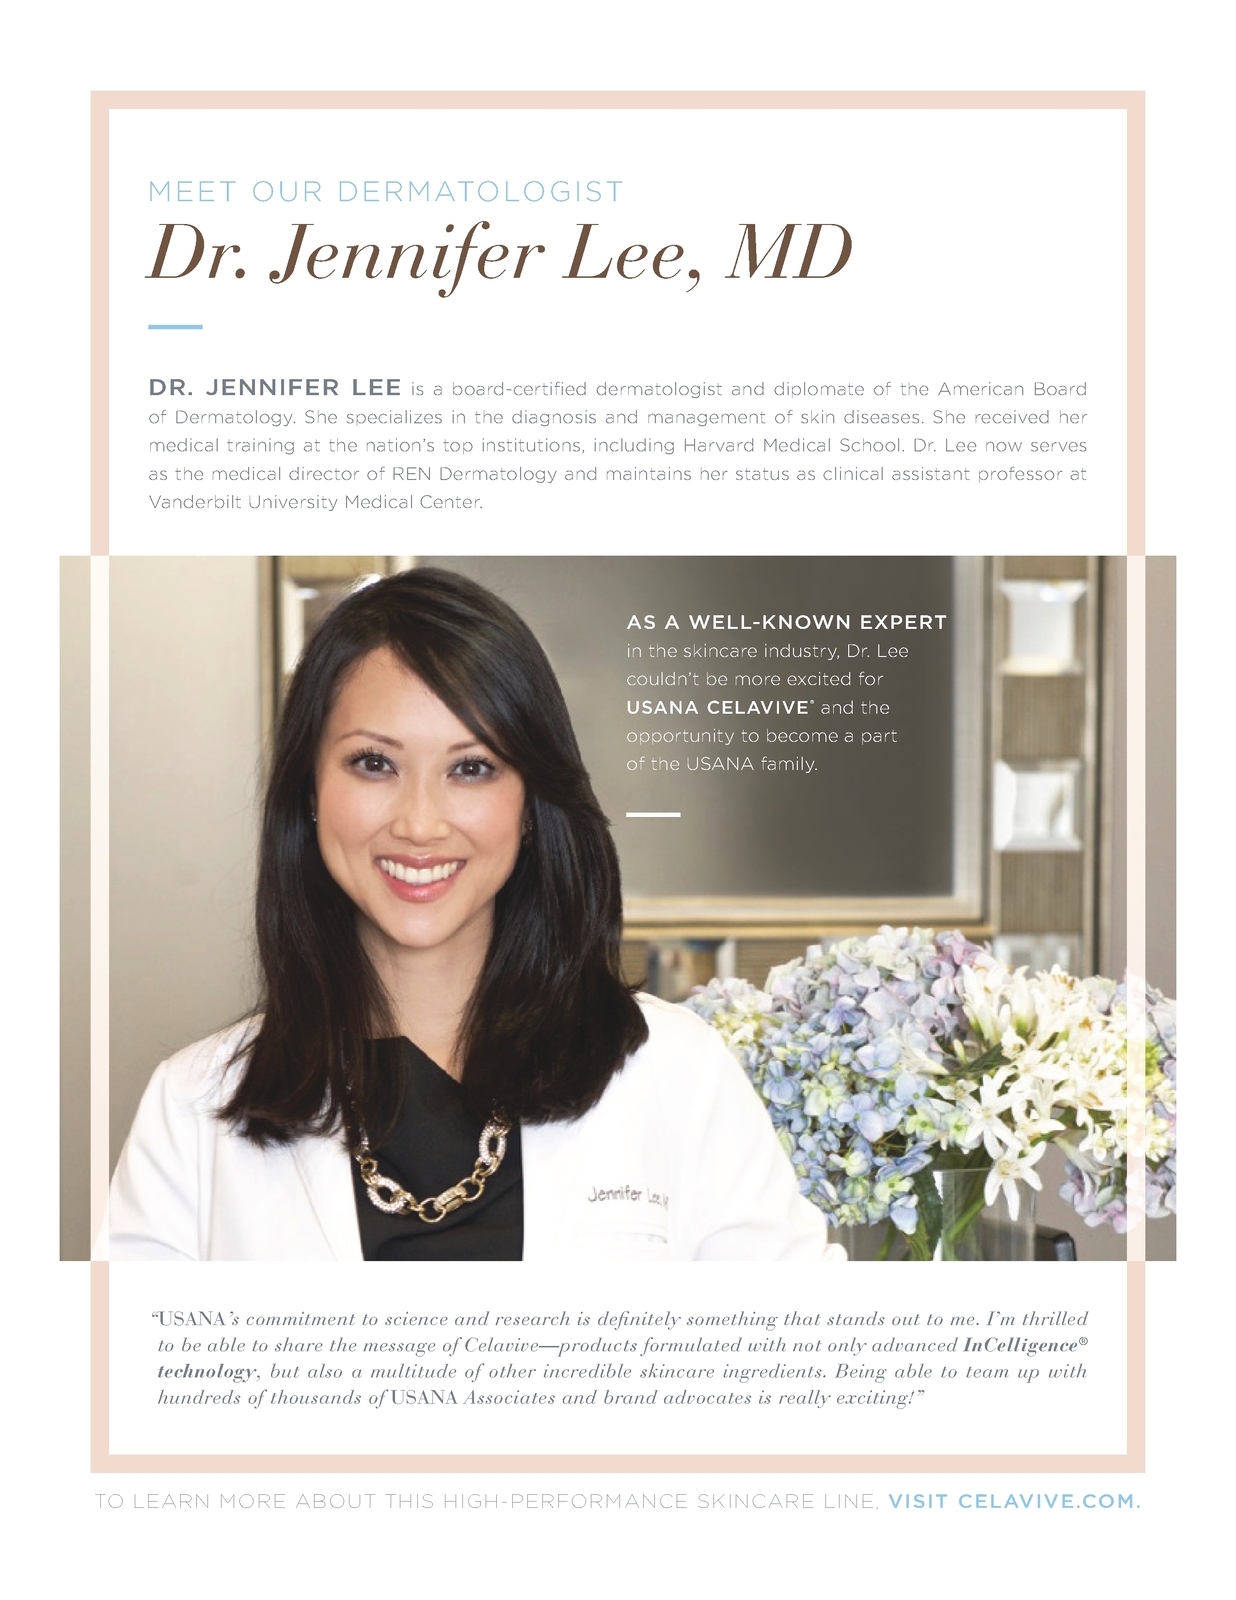 Celavive: Meet Our Dermatologist Dr. Jennifer Lee, MD